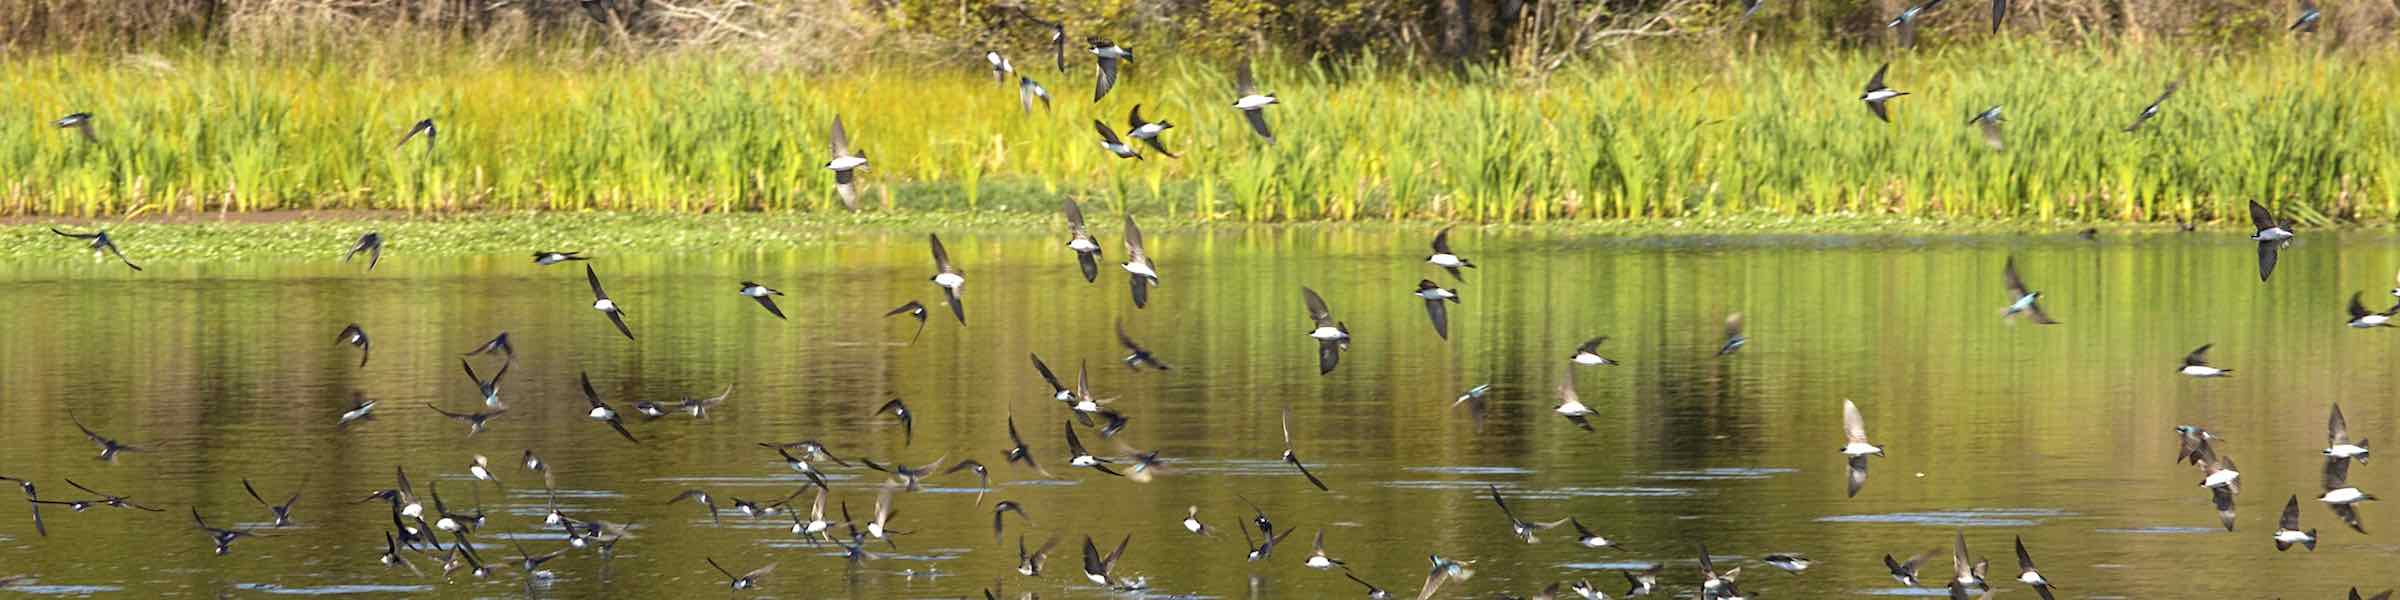 Flock of birds flying low over Goose Pond at Harris Neck National Wildlife Refuge.